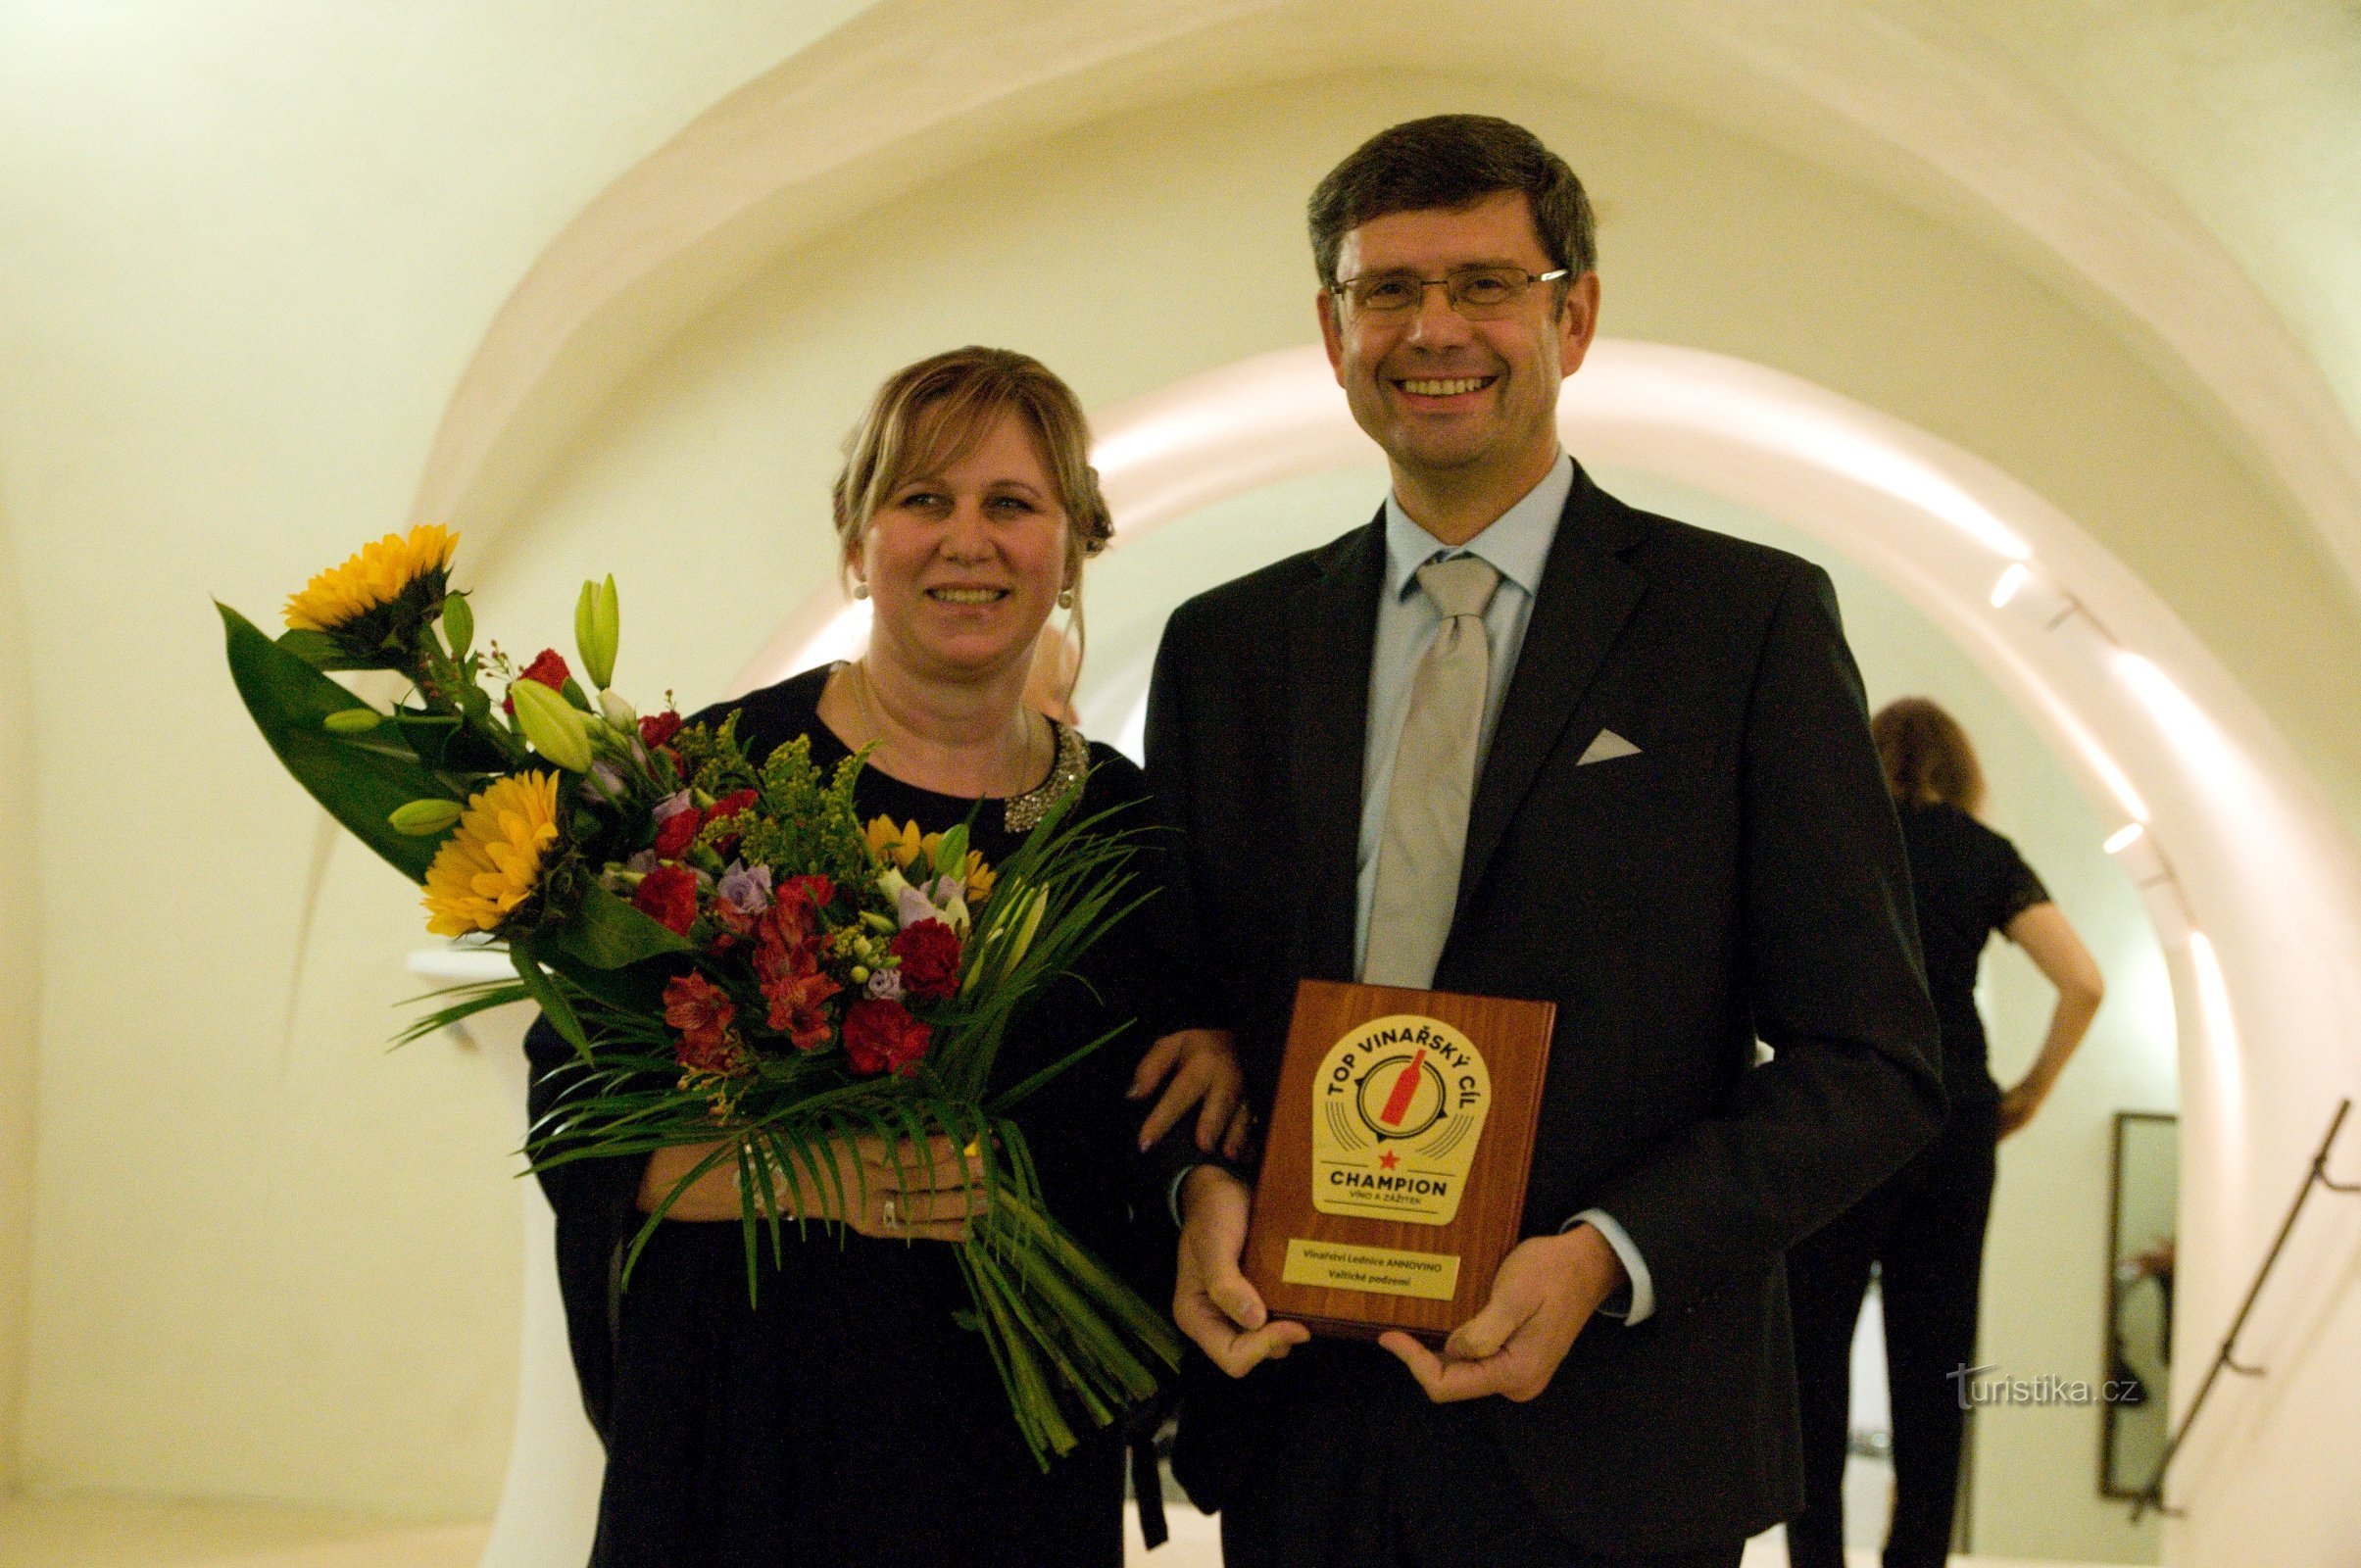 R: Žďárský carrega com orgulho um valioso troféu - a placa CAMPEÃO do destino de vinhos Top.